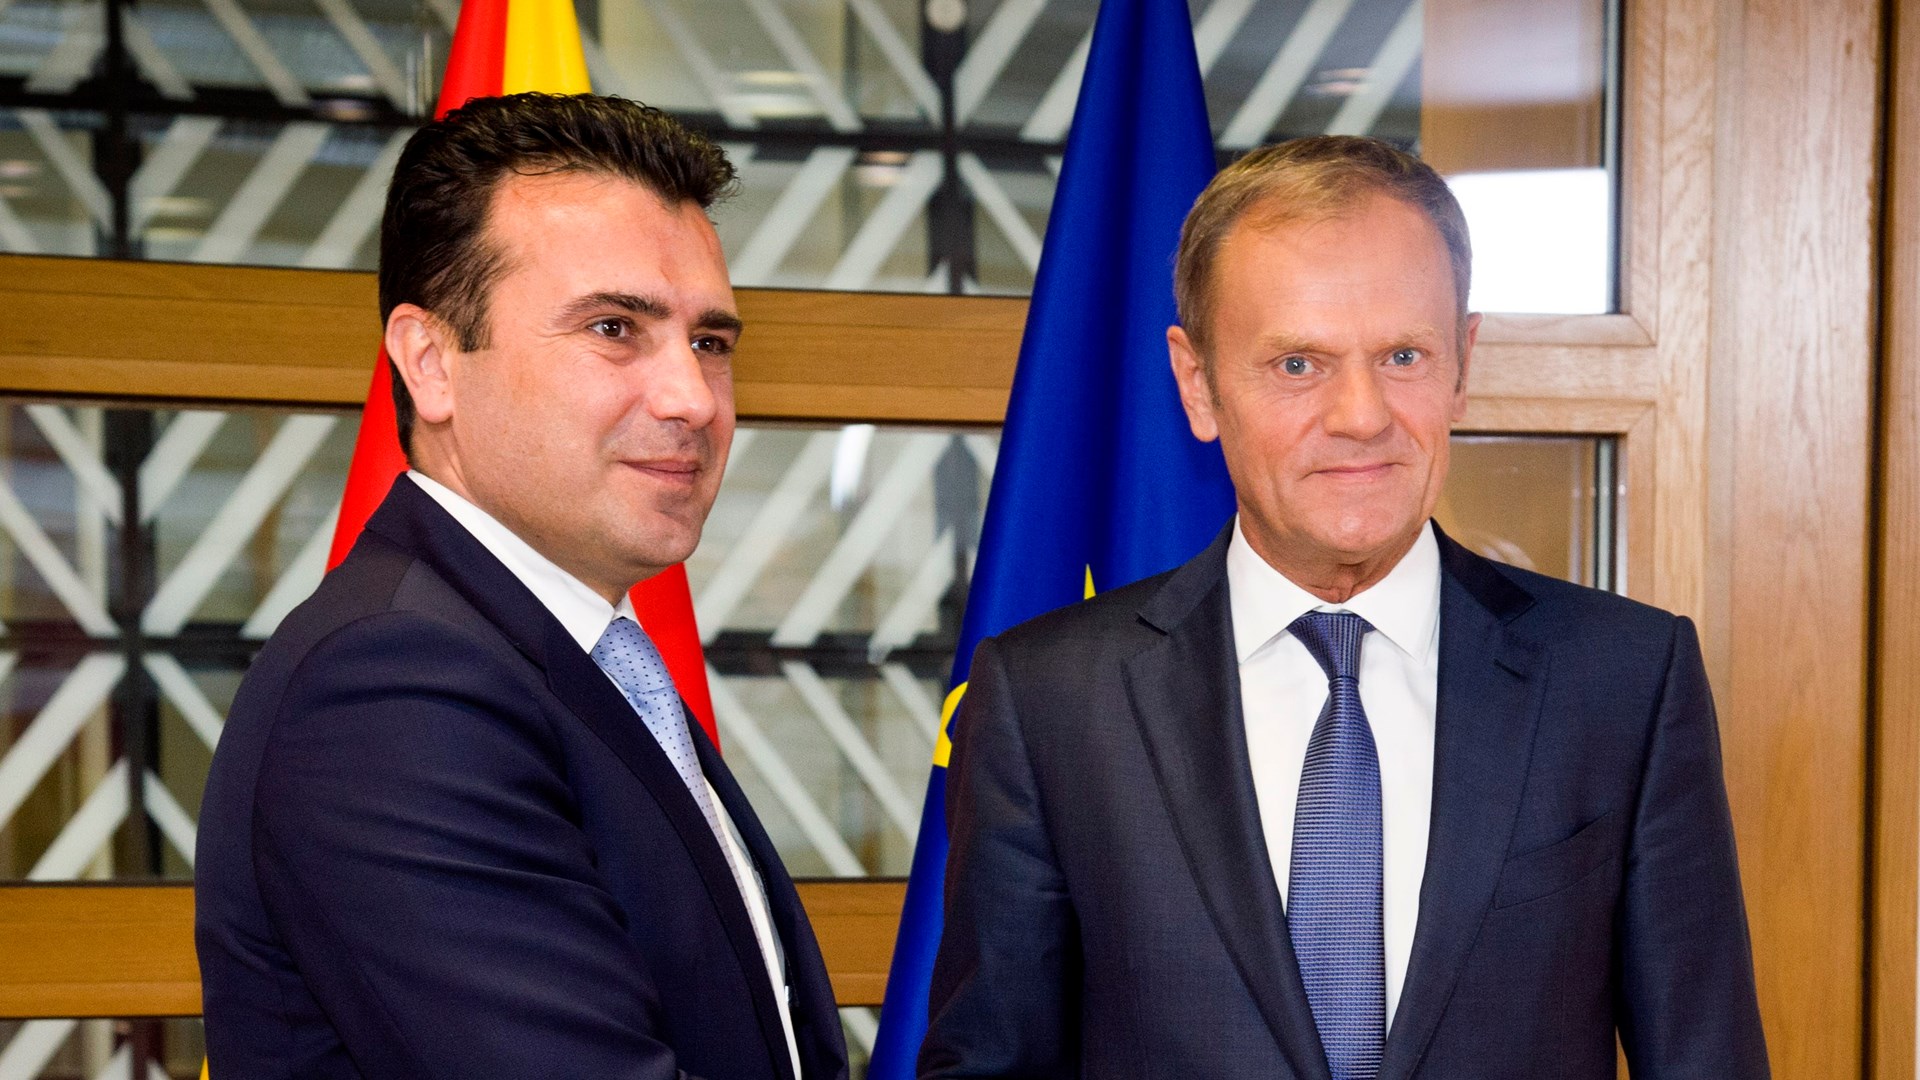 Ο Τουσκ καλεί τις χώρες της Ε.Ε. να επικυρώσουν την απόφαση για έναρξη ενταξιακών διαπραγματεύσεων με ΠΓΔΜ και Αλβανία